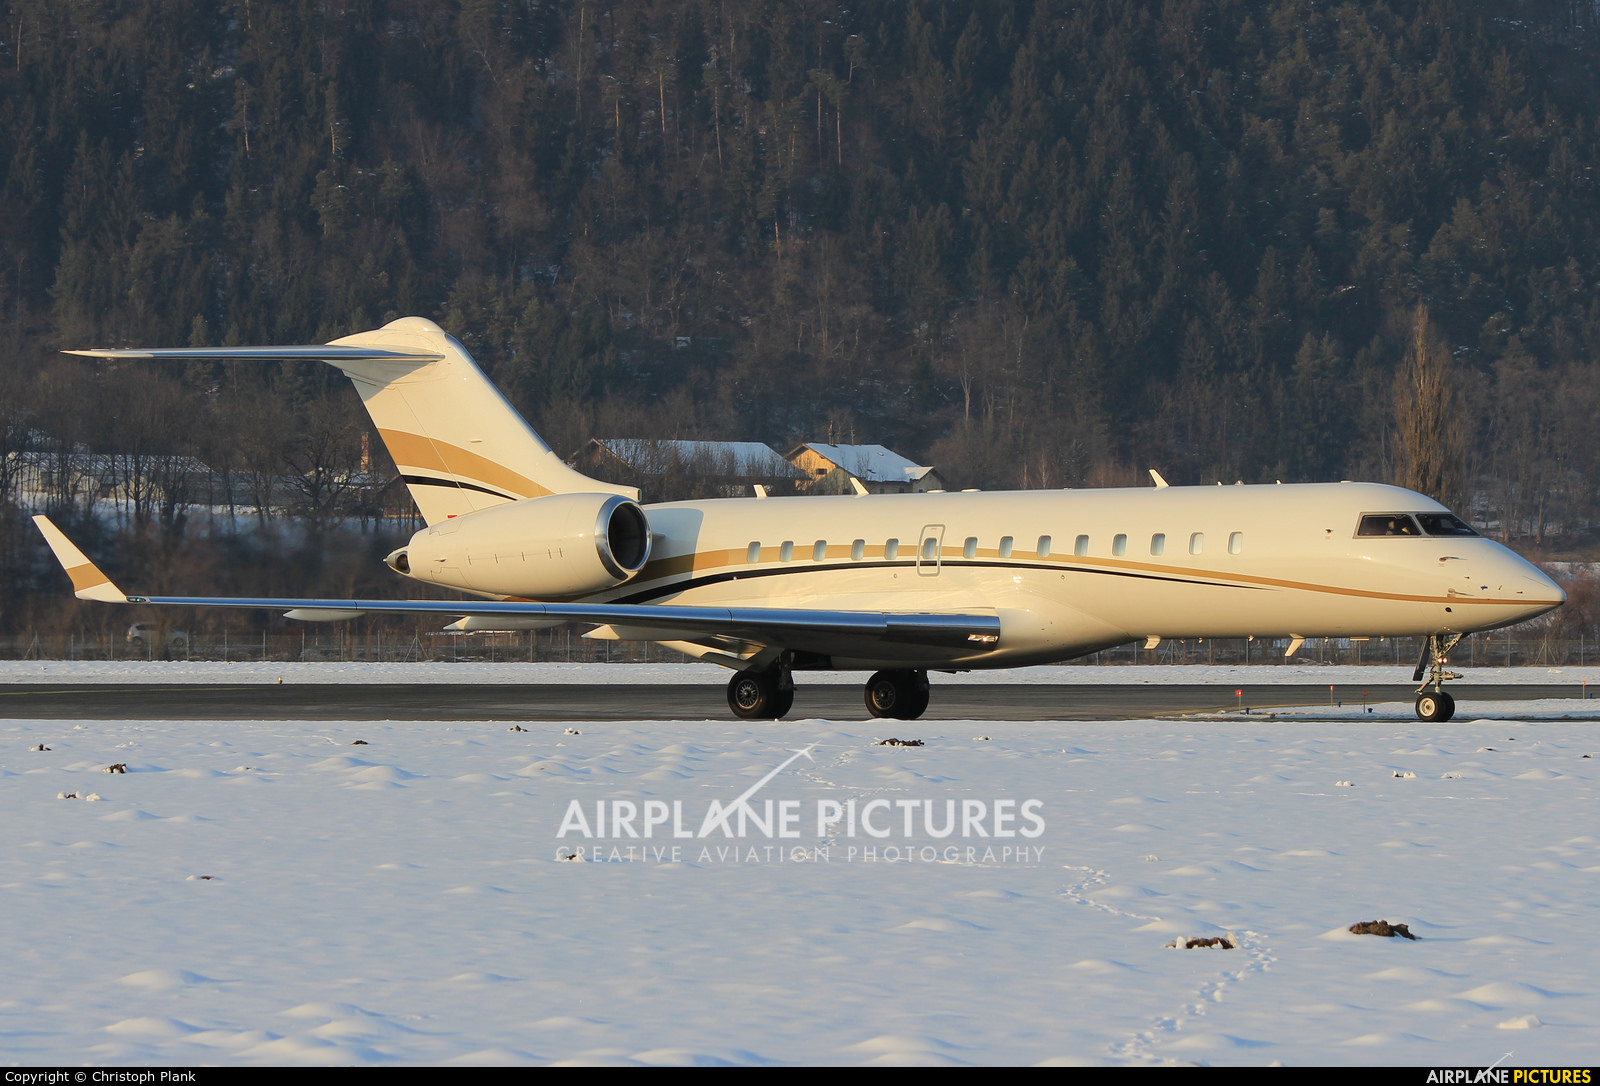 Tyrolean Jet Service OE-IEL aircraft at Innsbruck